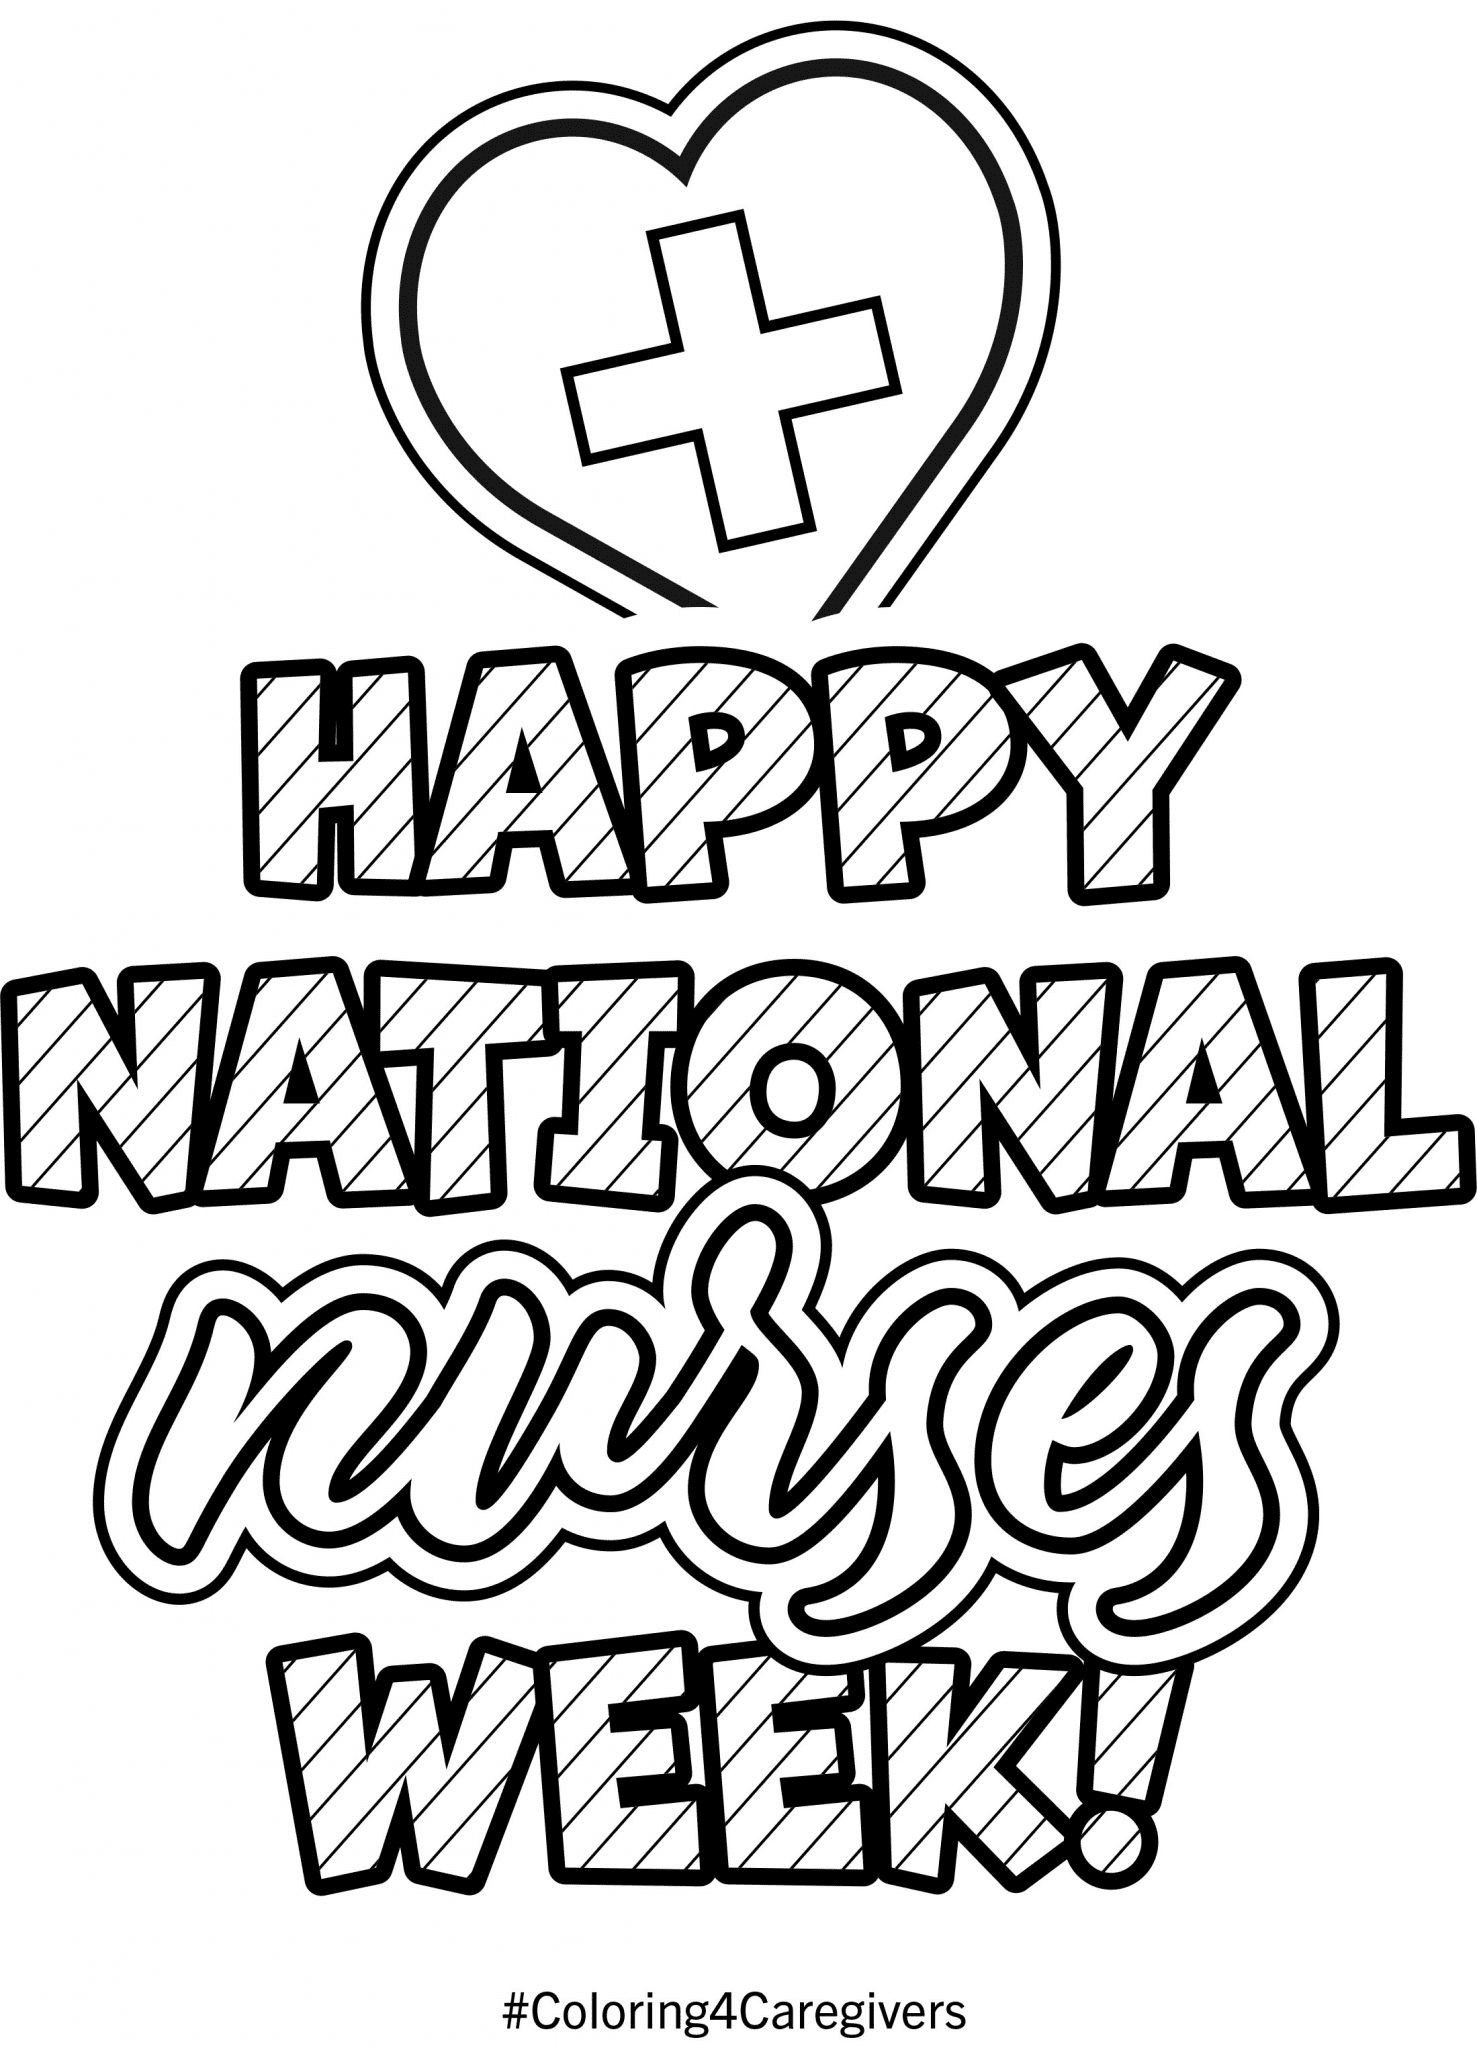 Happy National Nurses week Coloring Page